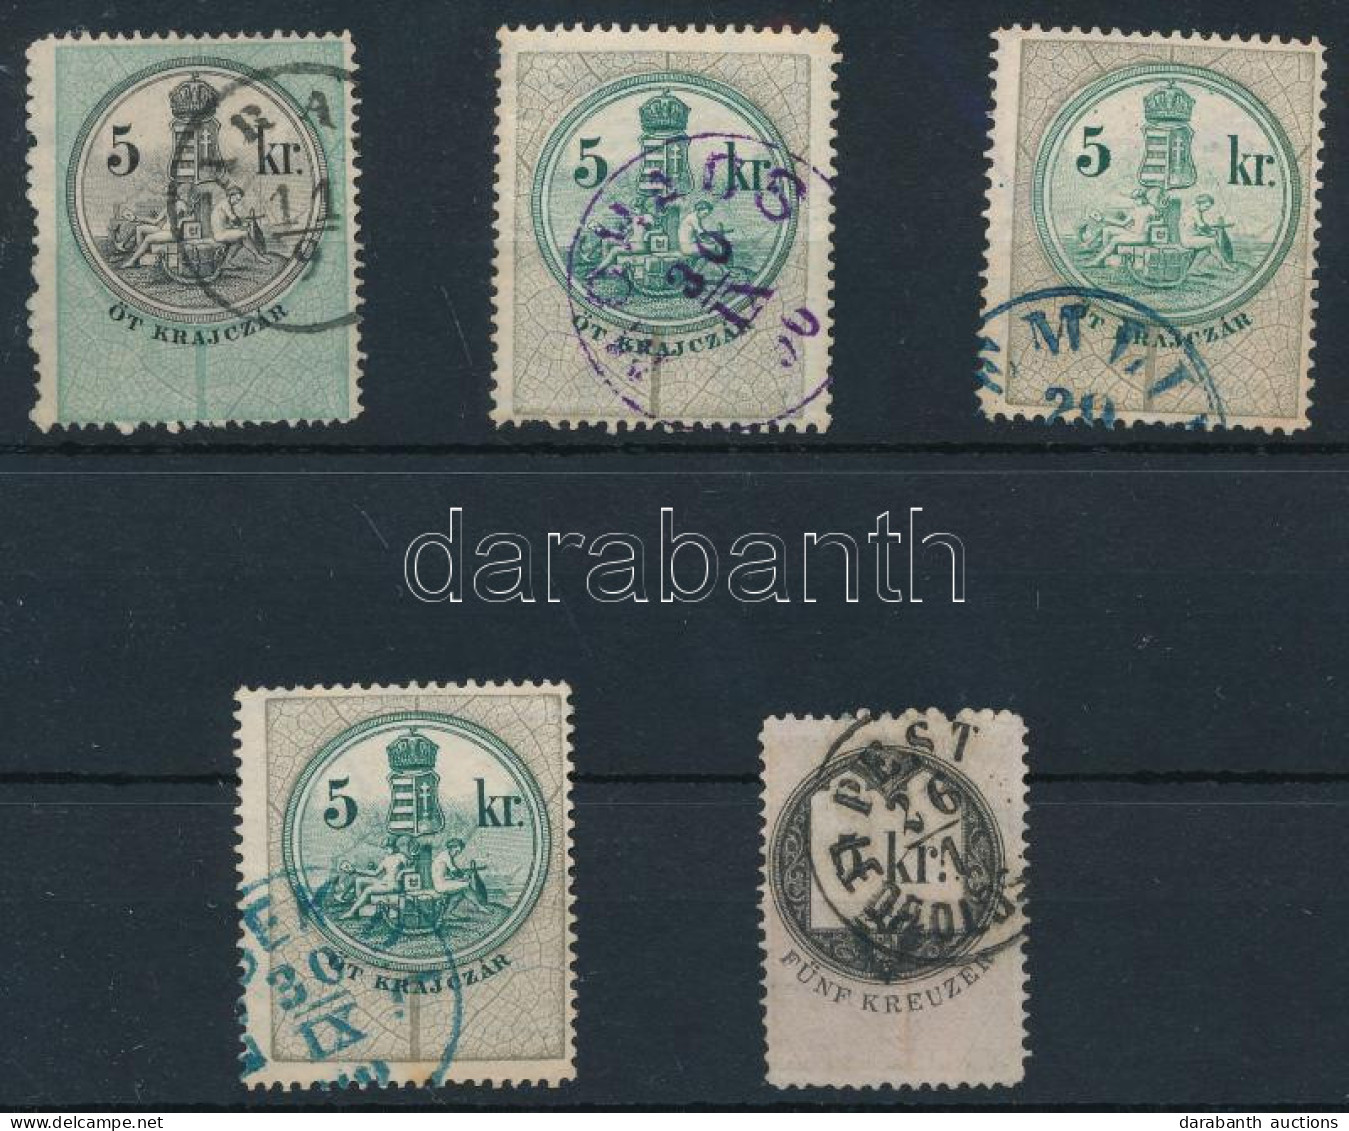 5 Db Okmánybélyeg Postabélyegként Való Felhasználása (hely-kelet Bélyegző) / 5 Fiscal Stamps Used As Postal Stamp - Ohne Zuordnung